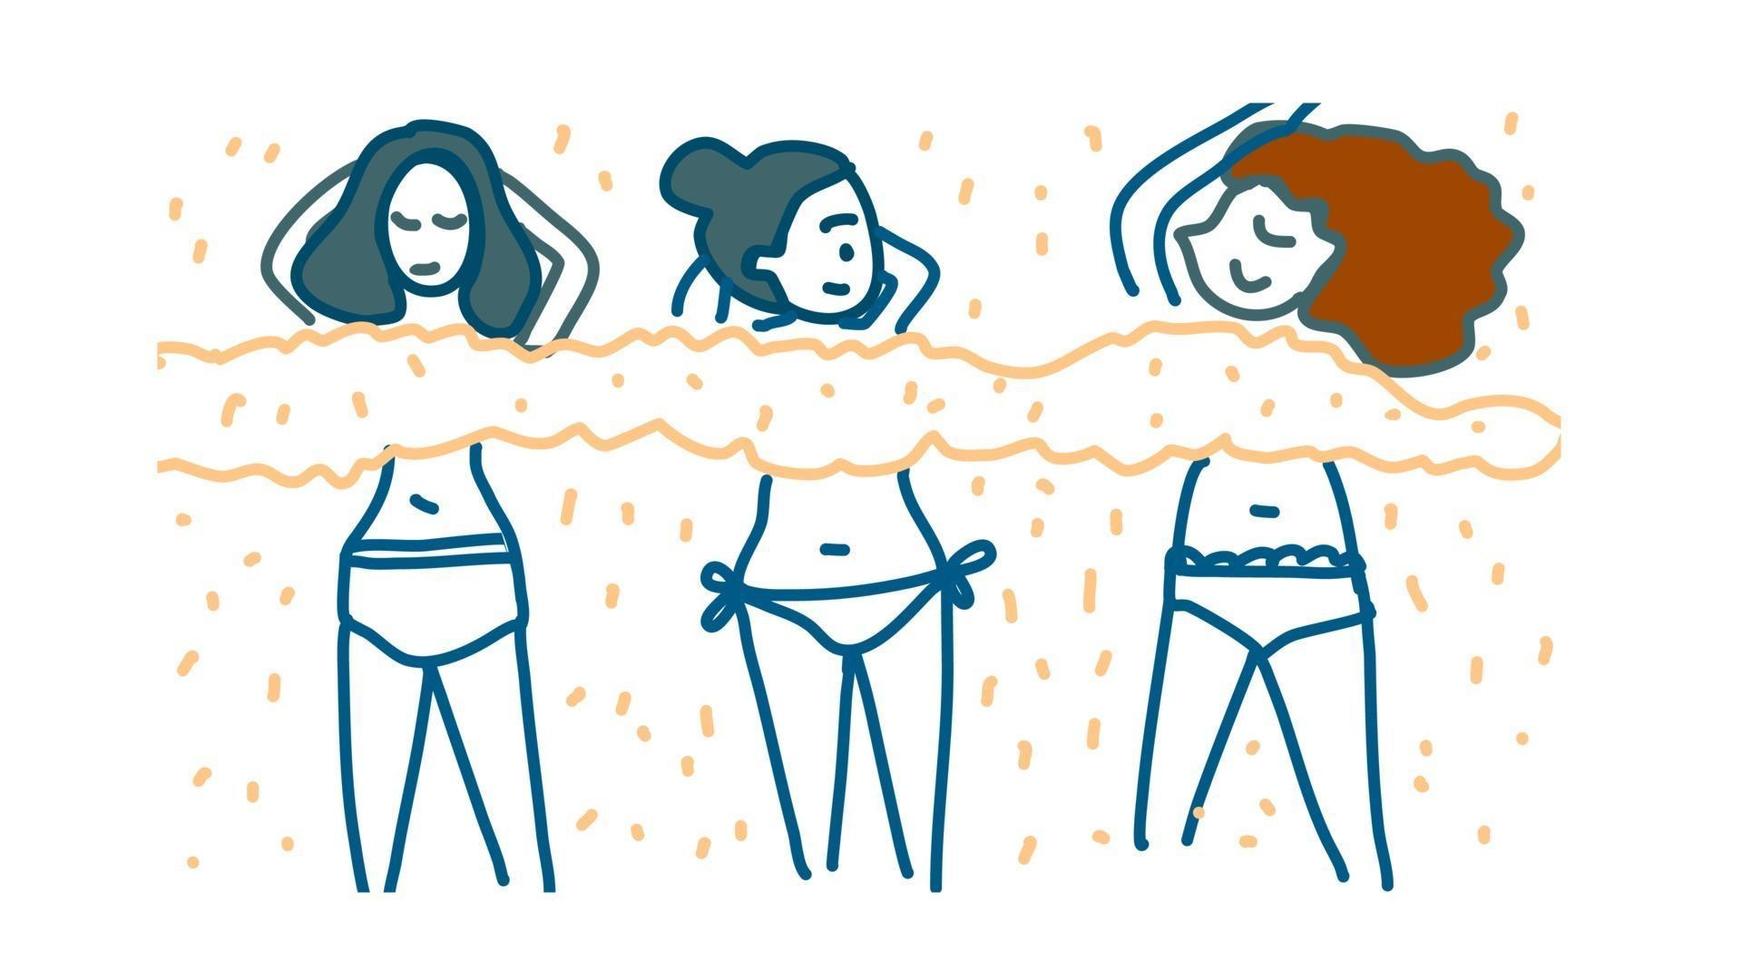 lindas 3 chicas en topless en la playa vector de dibujos animados dibujados a mano